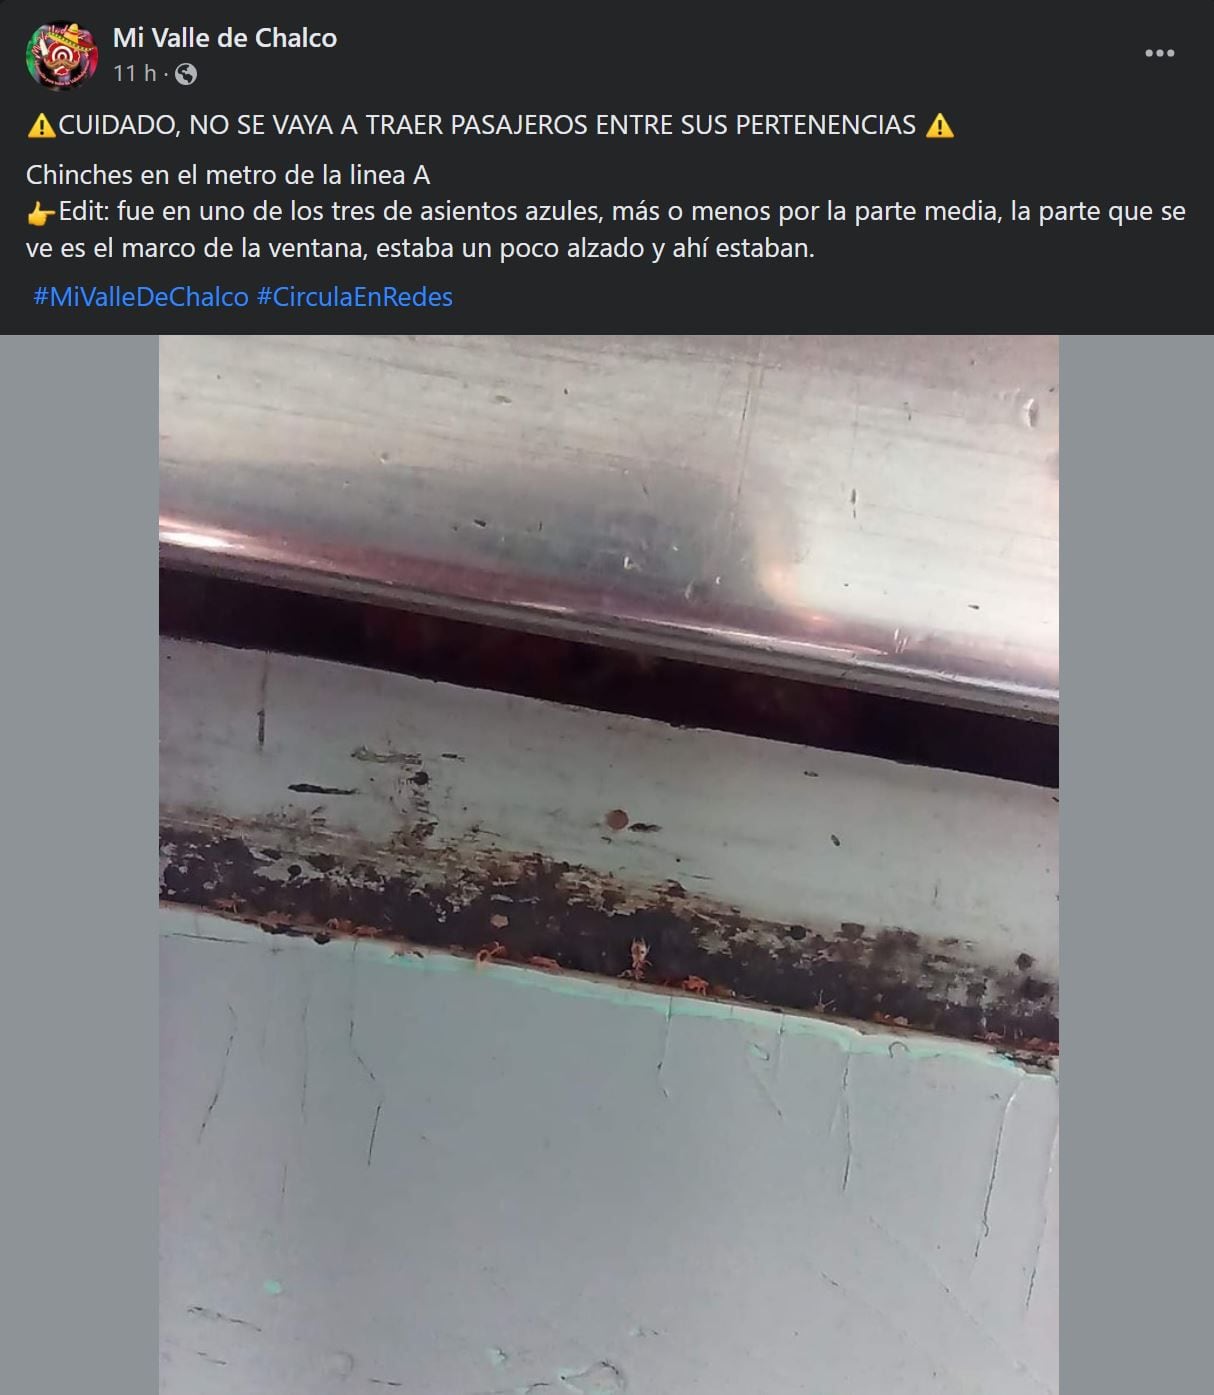 El usuario reportó la presencia de chinches en uno de los ventanales del vagón.- (Facebook: Mi valle de chalco)